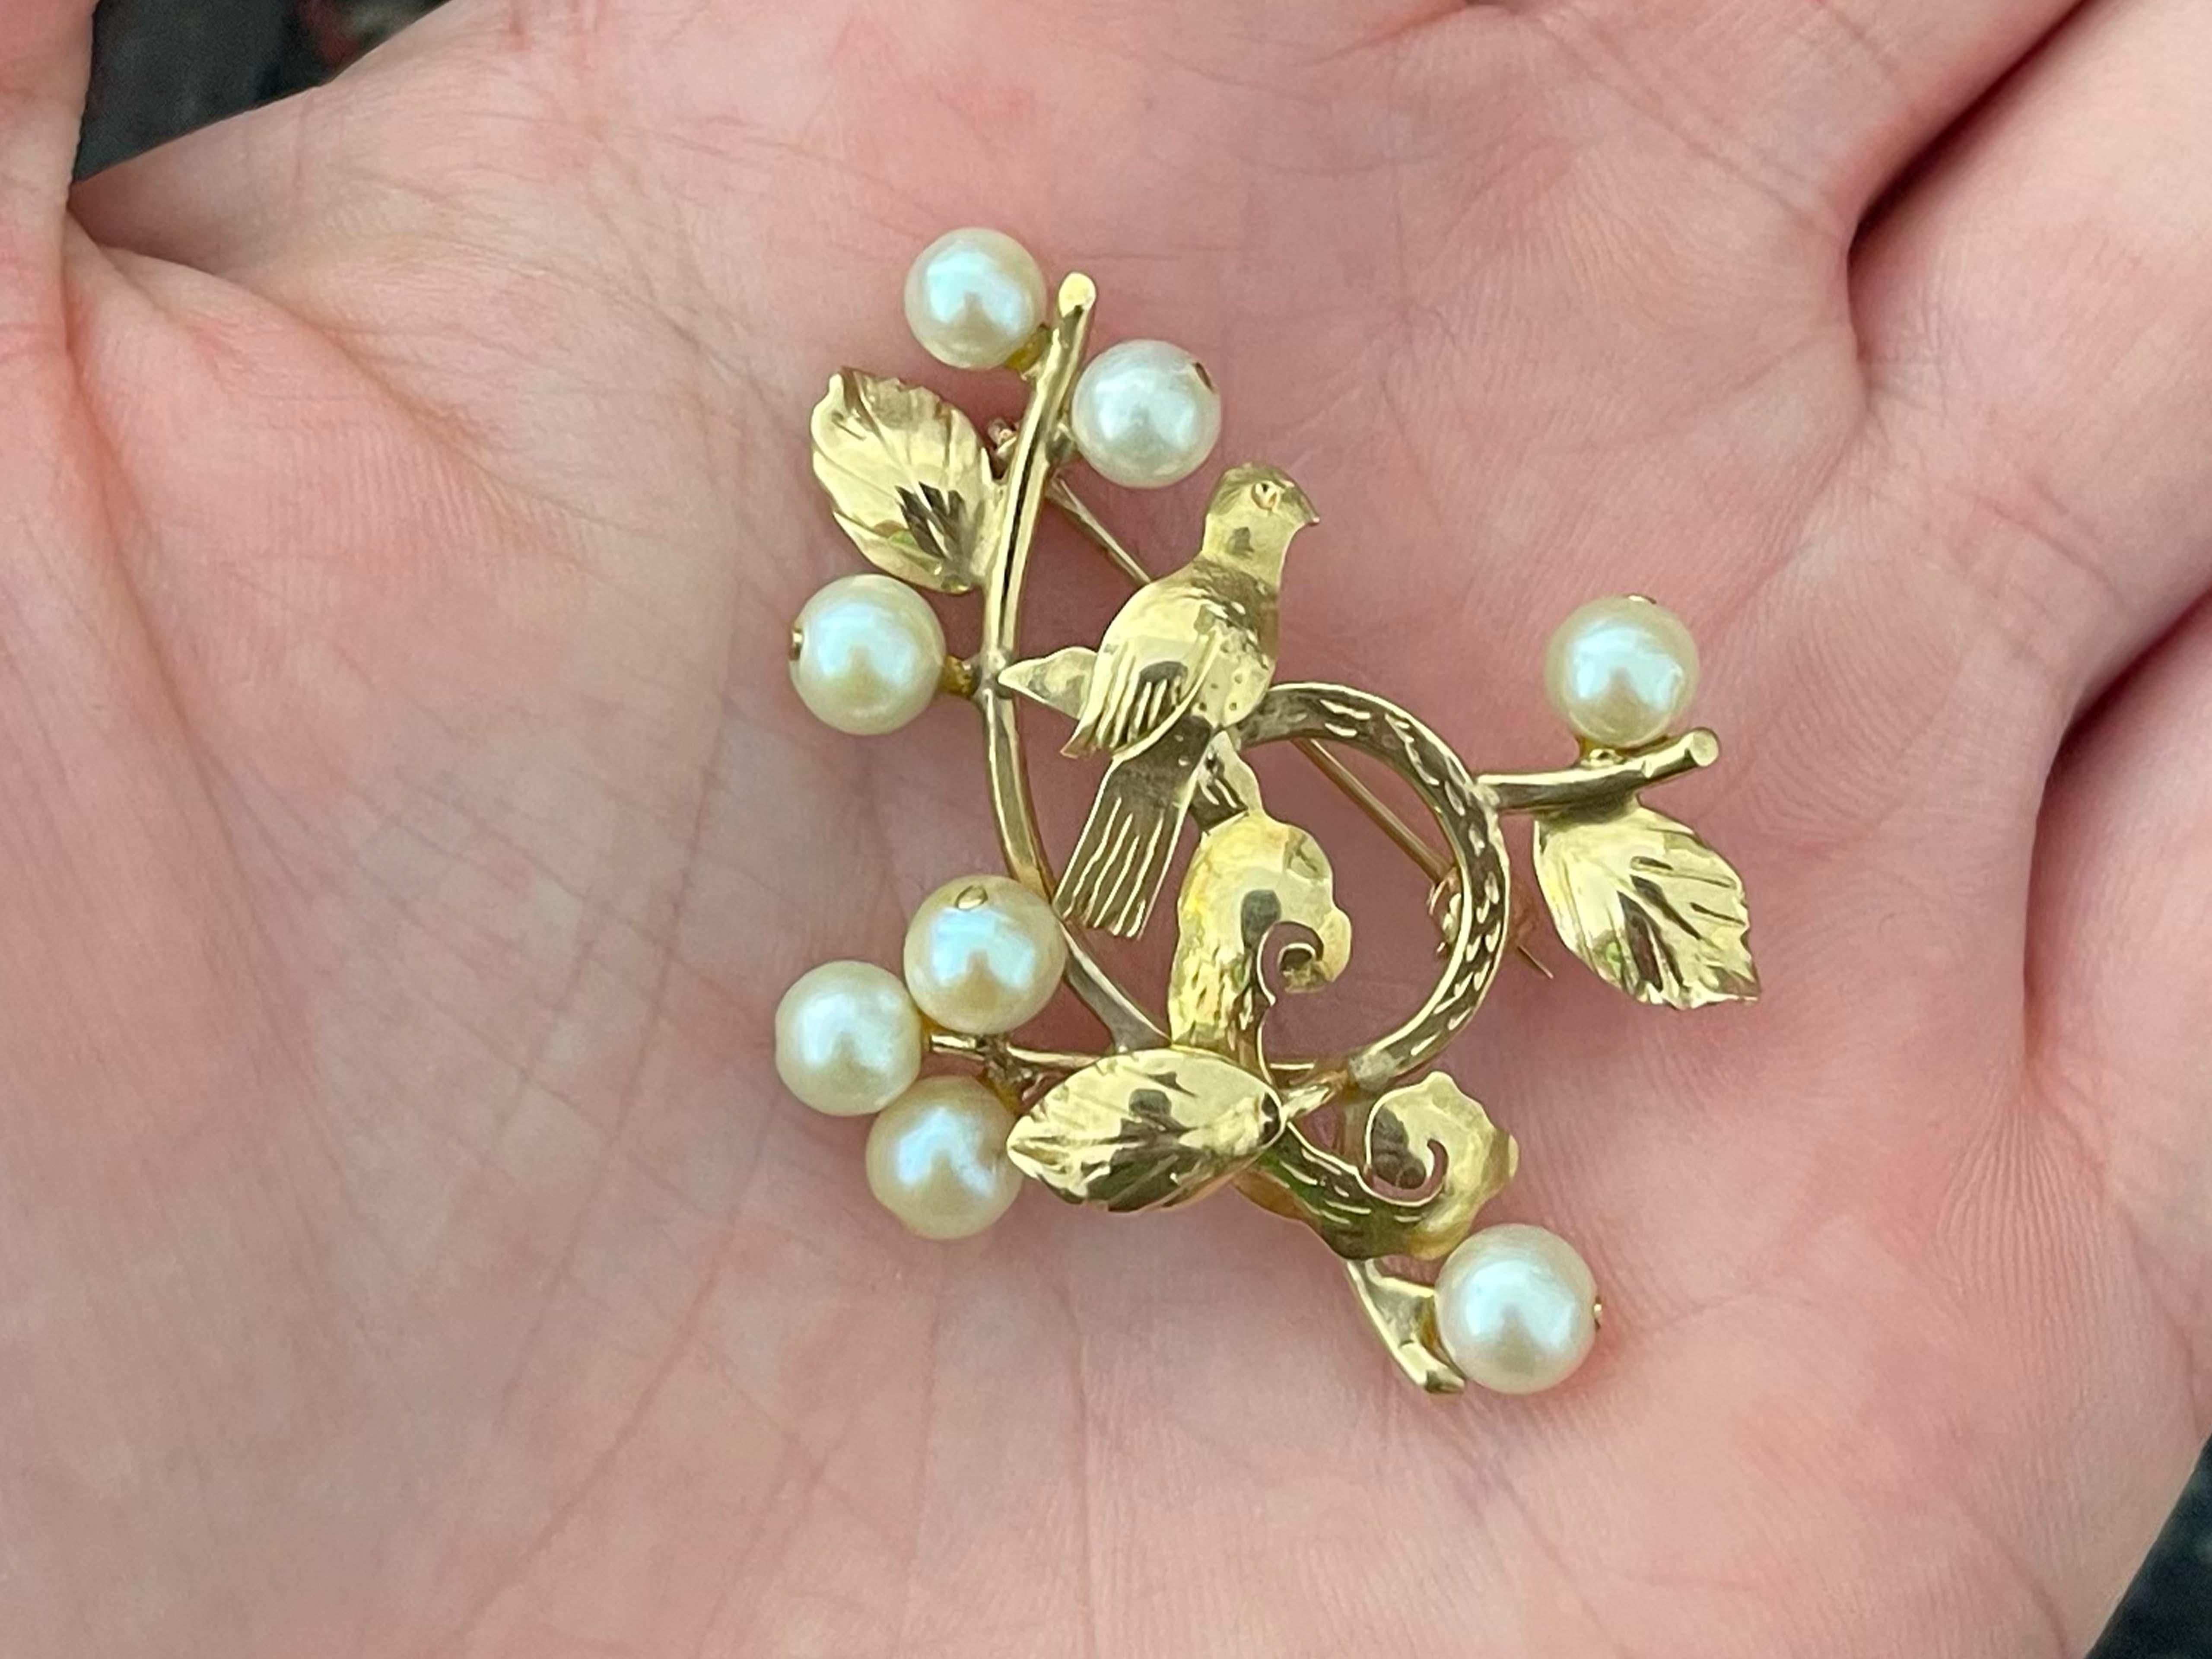 Brosche Spezifikationen:

Designer: Ming's

Metall: 14k Gelbgold

Perlen: Akoya-Perlen

Gesamtgewicht: 5,1 Gramm

Brosche Abmessungen: 1.5